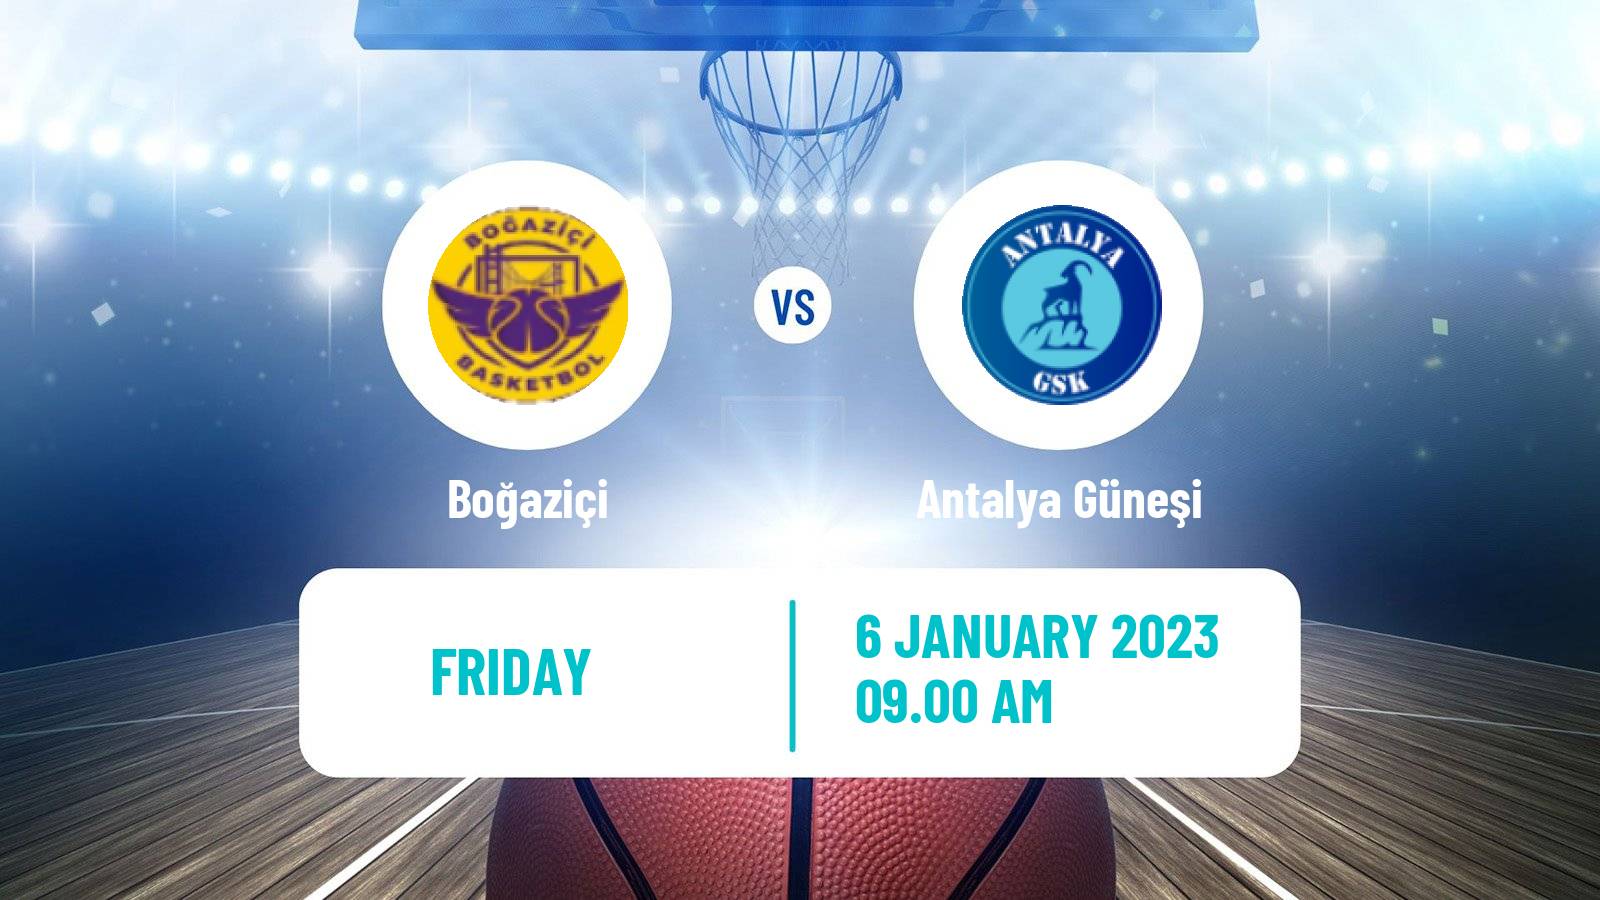 Basketball Turkish TKBL Women Boğaziçi - Antalya Güneşi